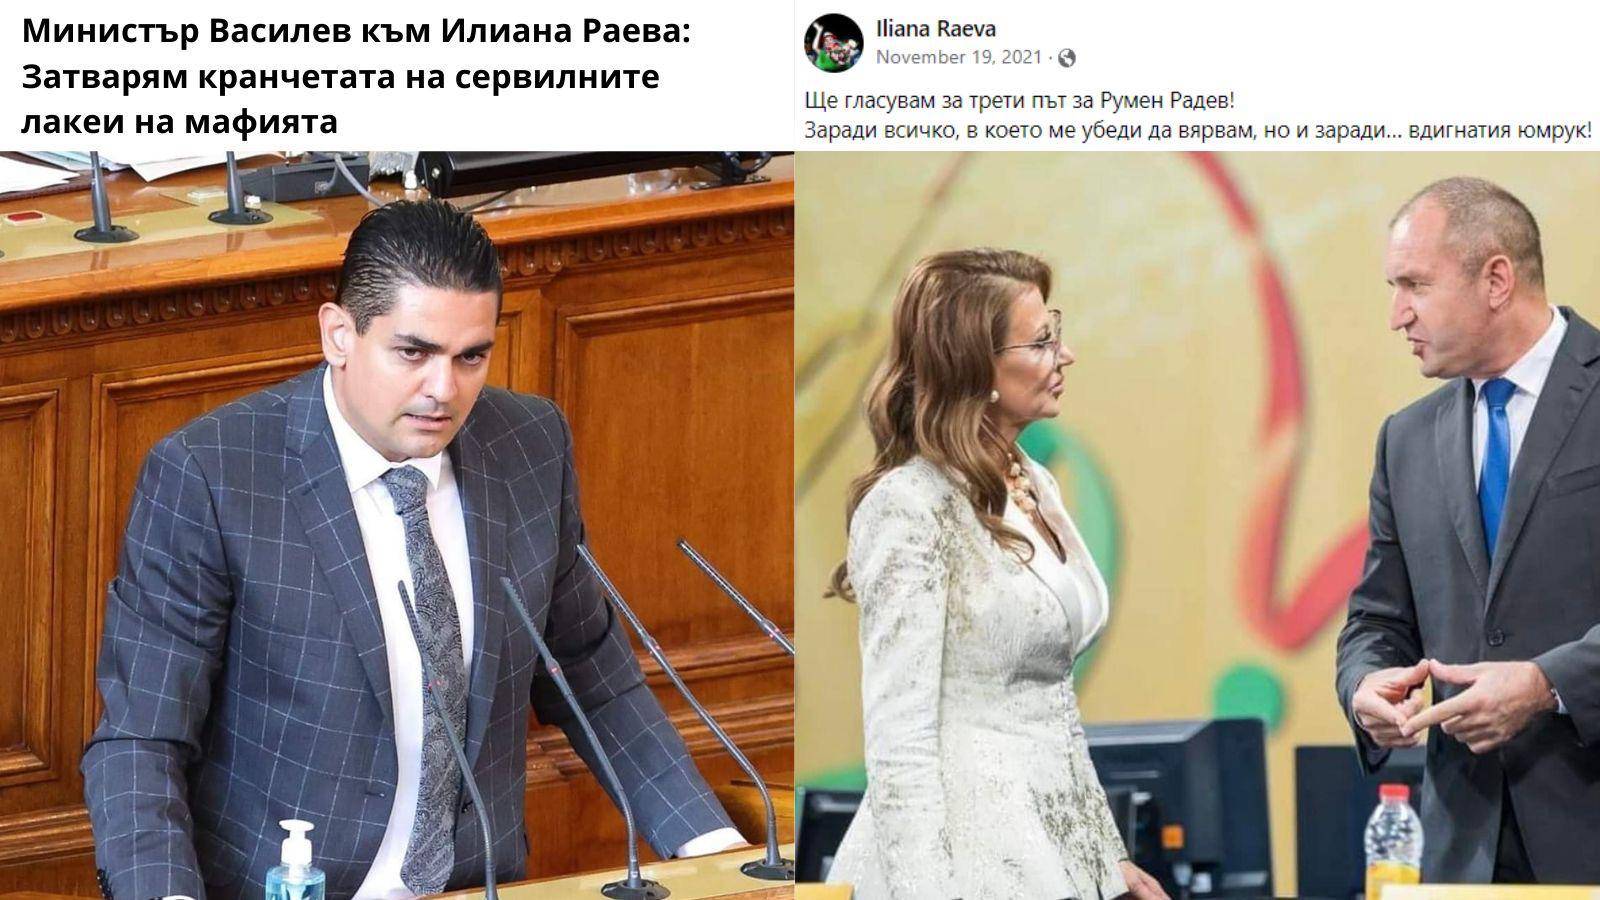 Заявлението на Радостин Василев и постът на Илиана Раева